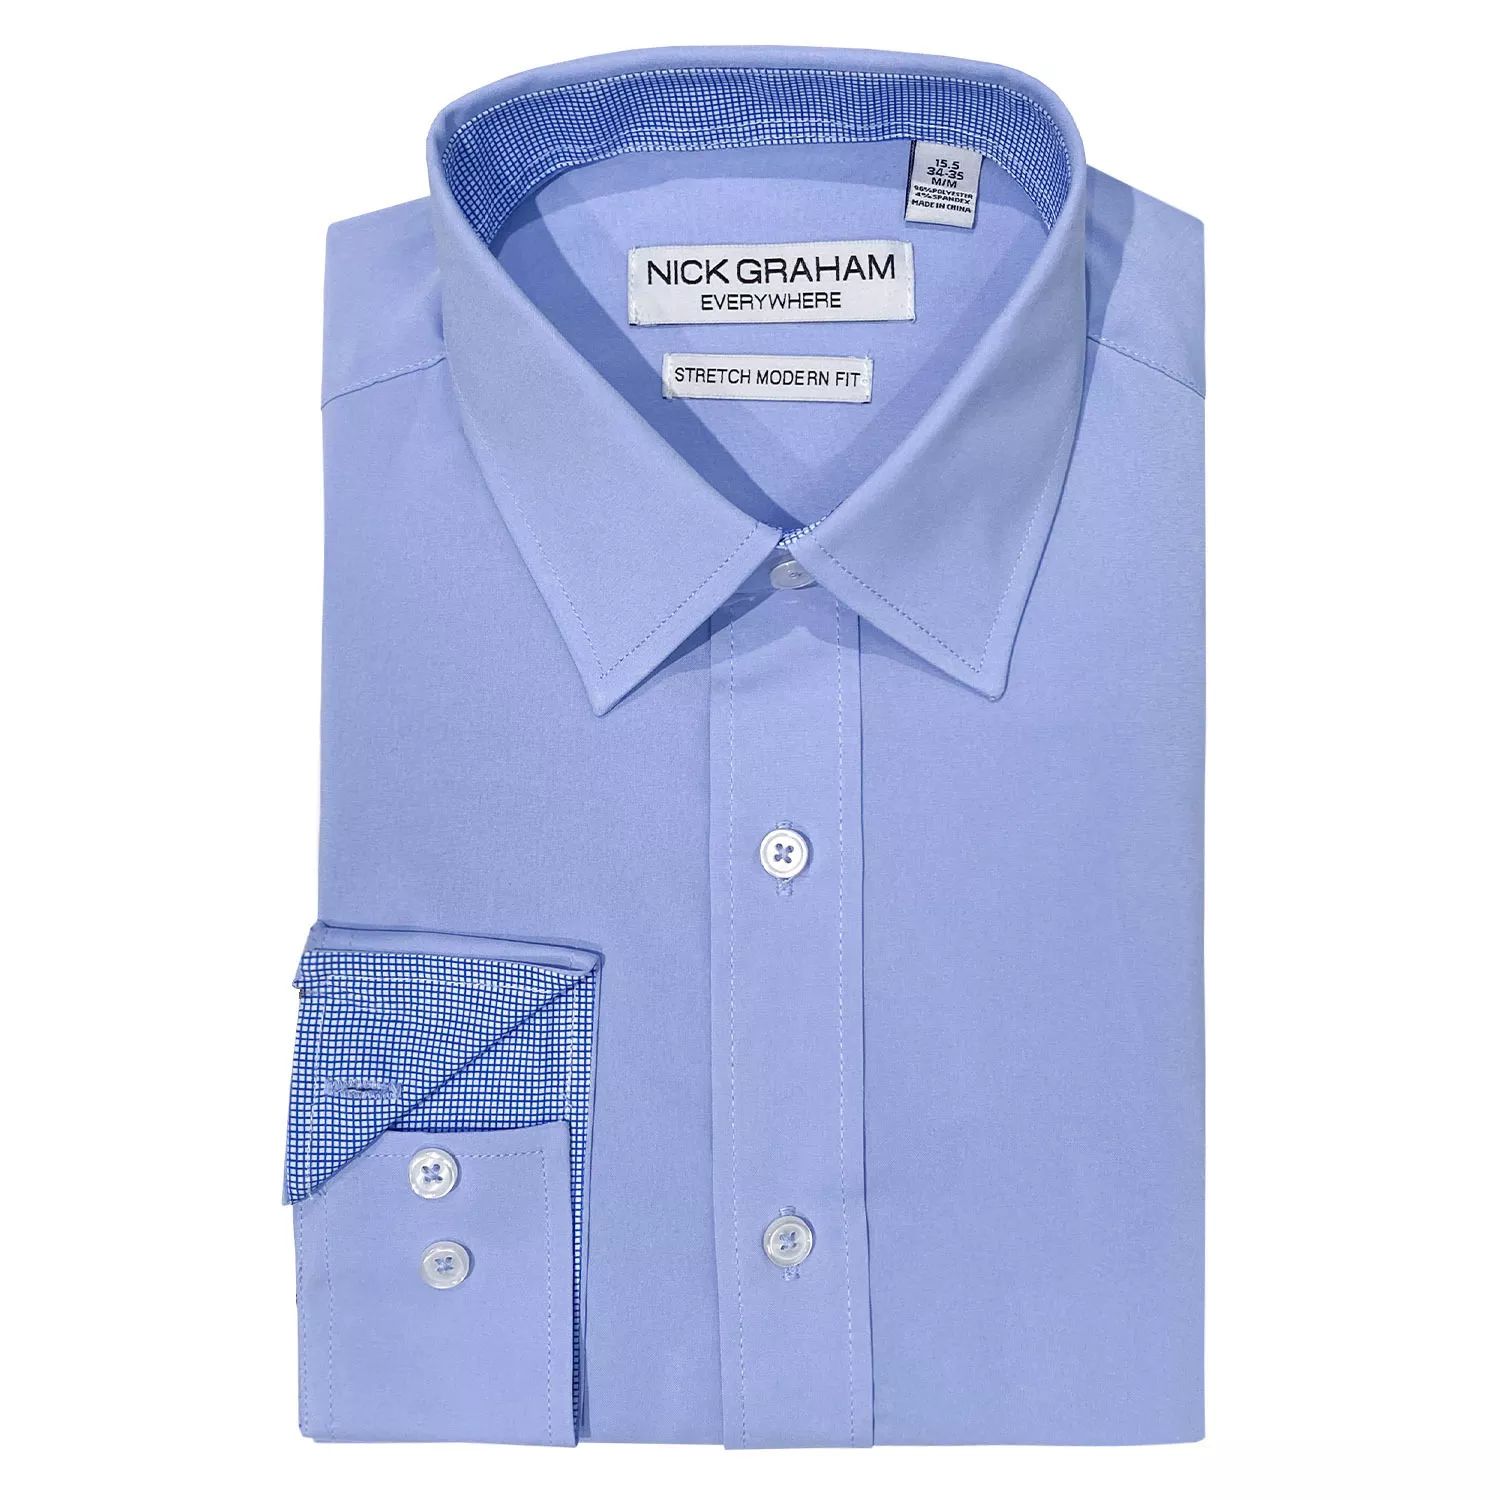 Мужская классическая рубашка-стрейч современного кроя из коллекции Traveler Collection Performance Nick Graham рубашка поло solid esprit цвет light blue